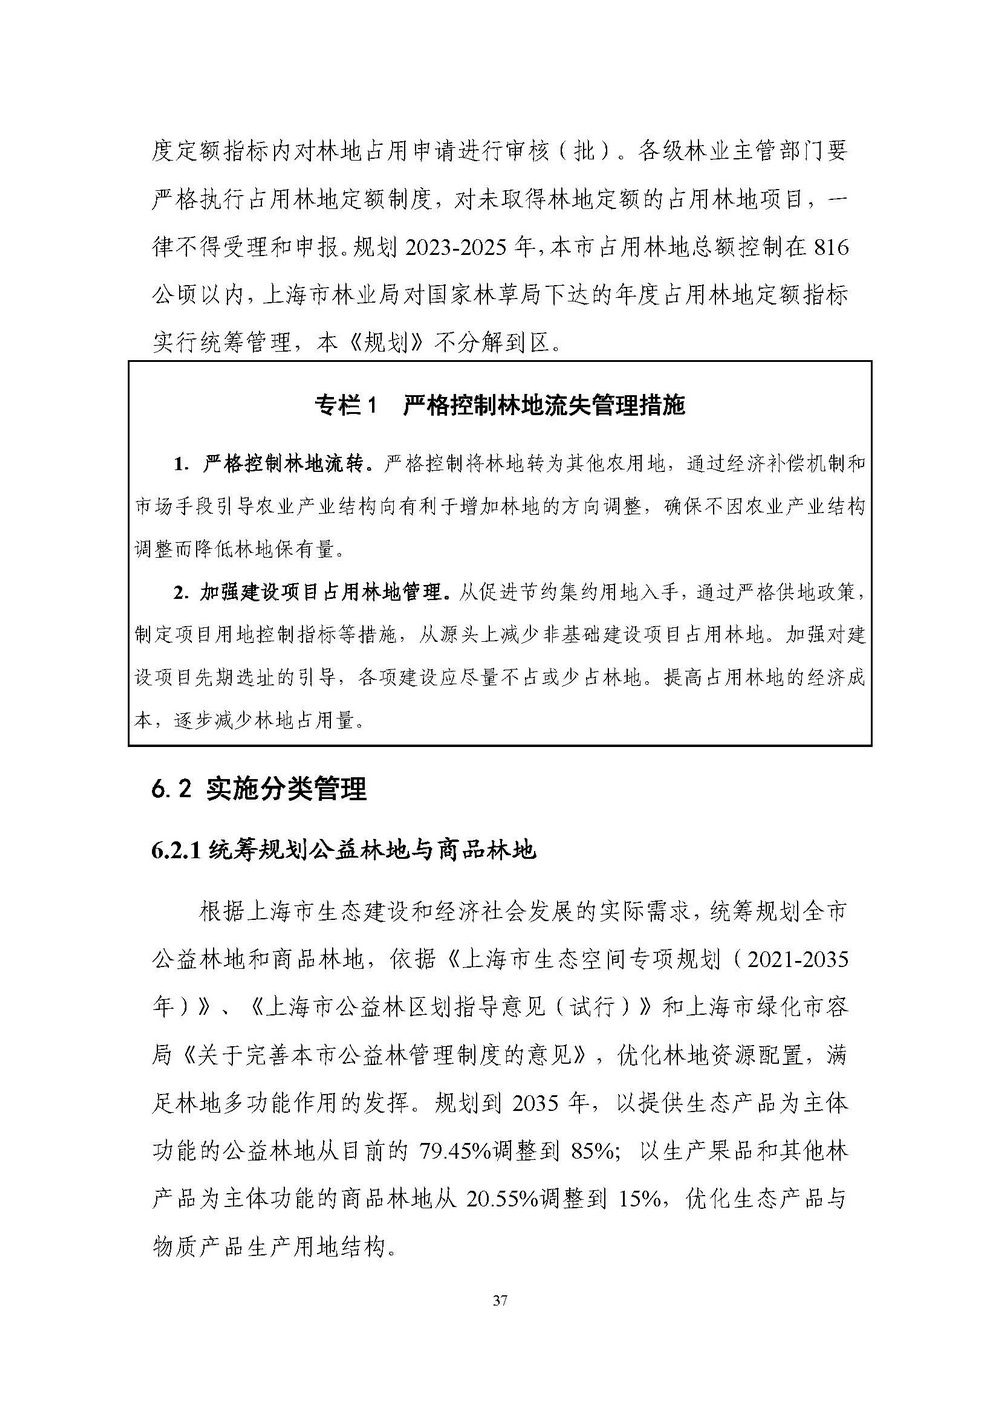 上海市森林和林地保护利用规划文本 公开稿 附图_页面_40.jpg